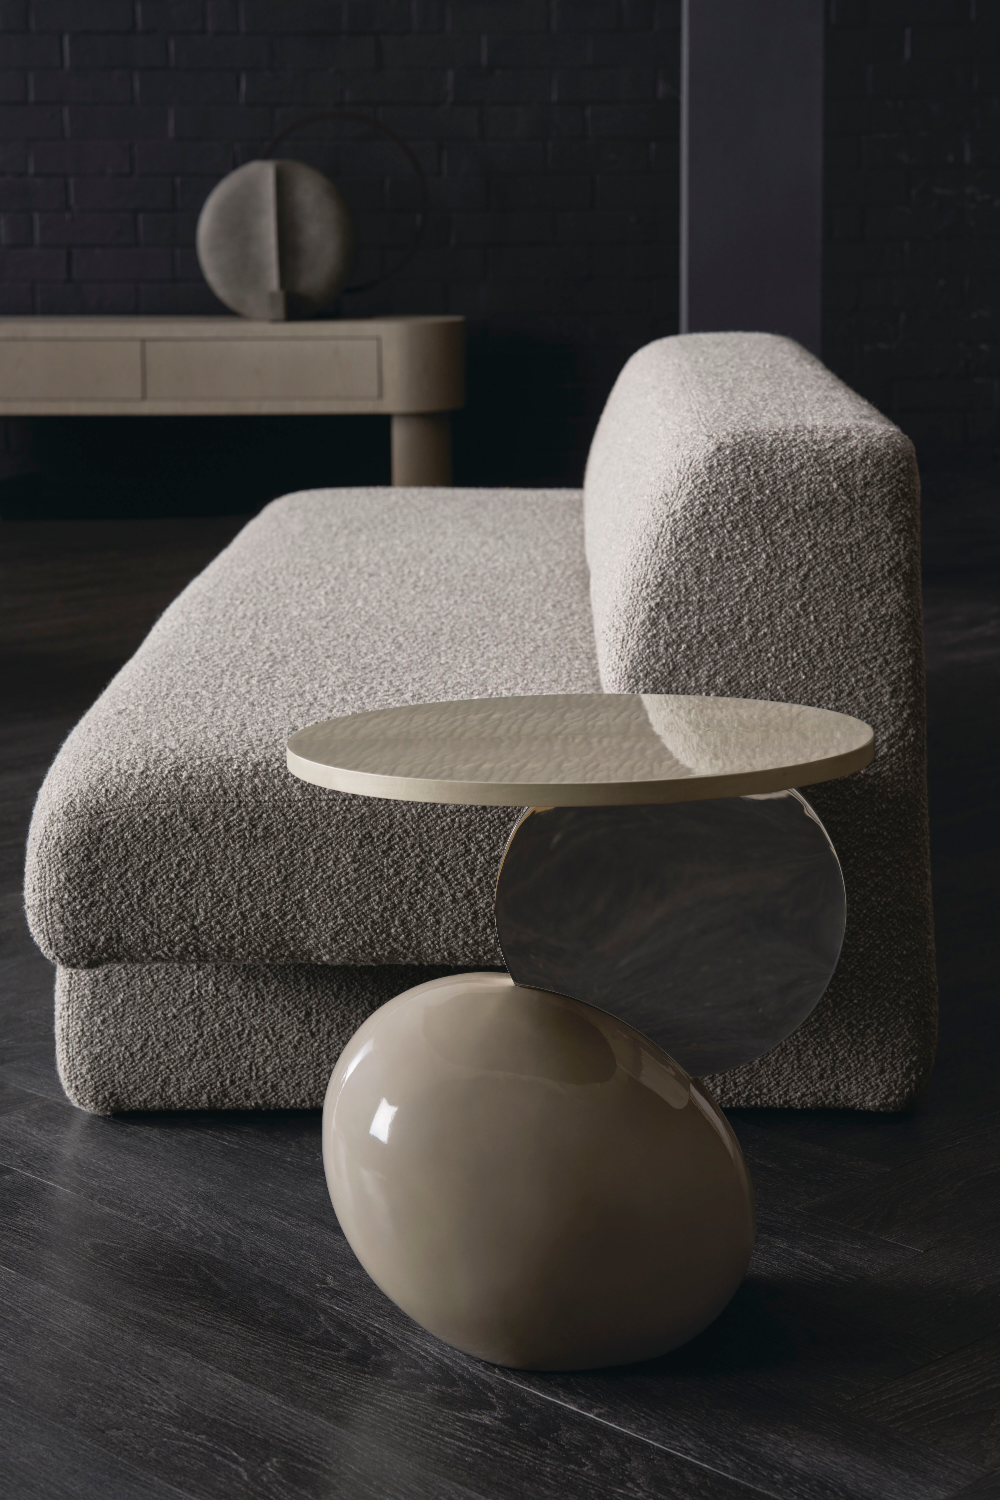 Gray Geometric Sofa | Caracole Nova | Oroa.com